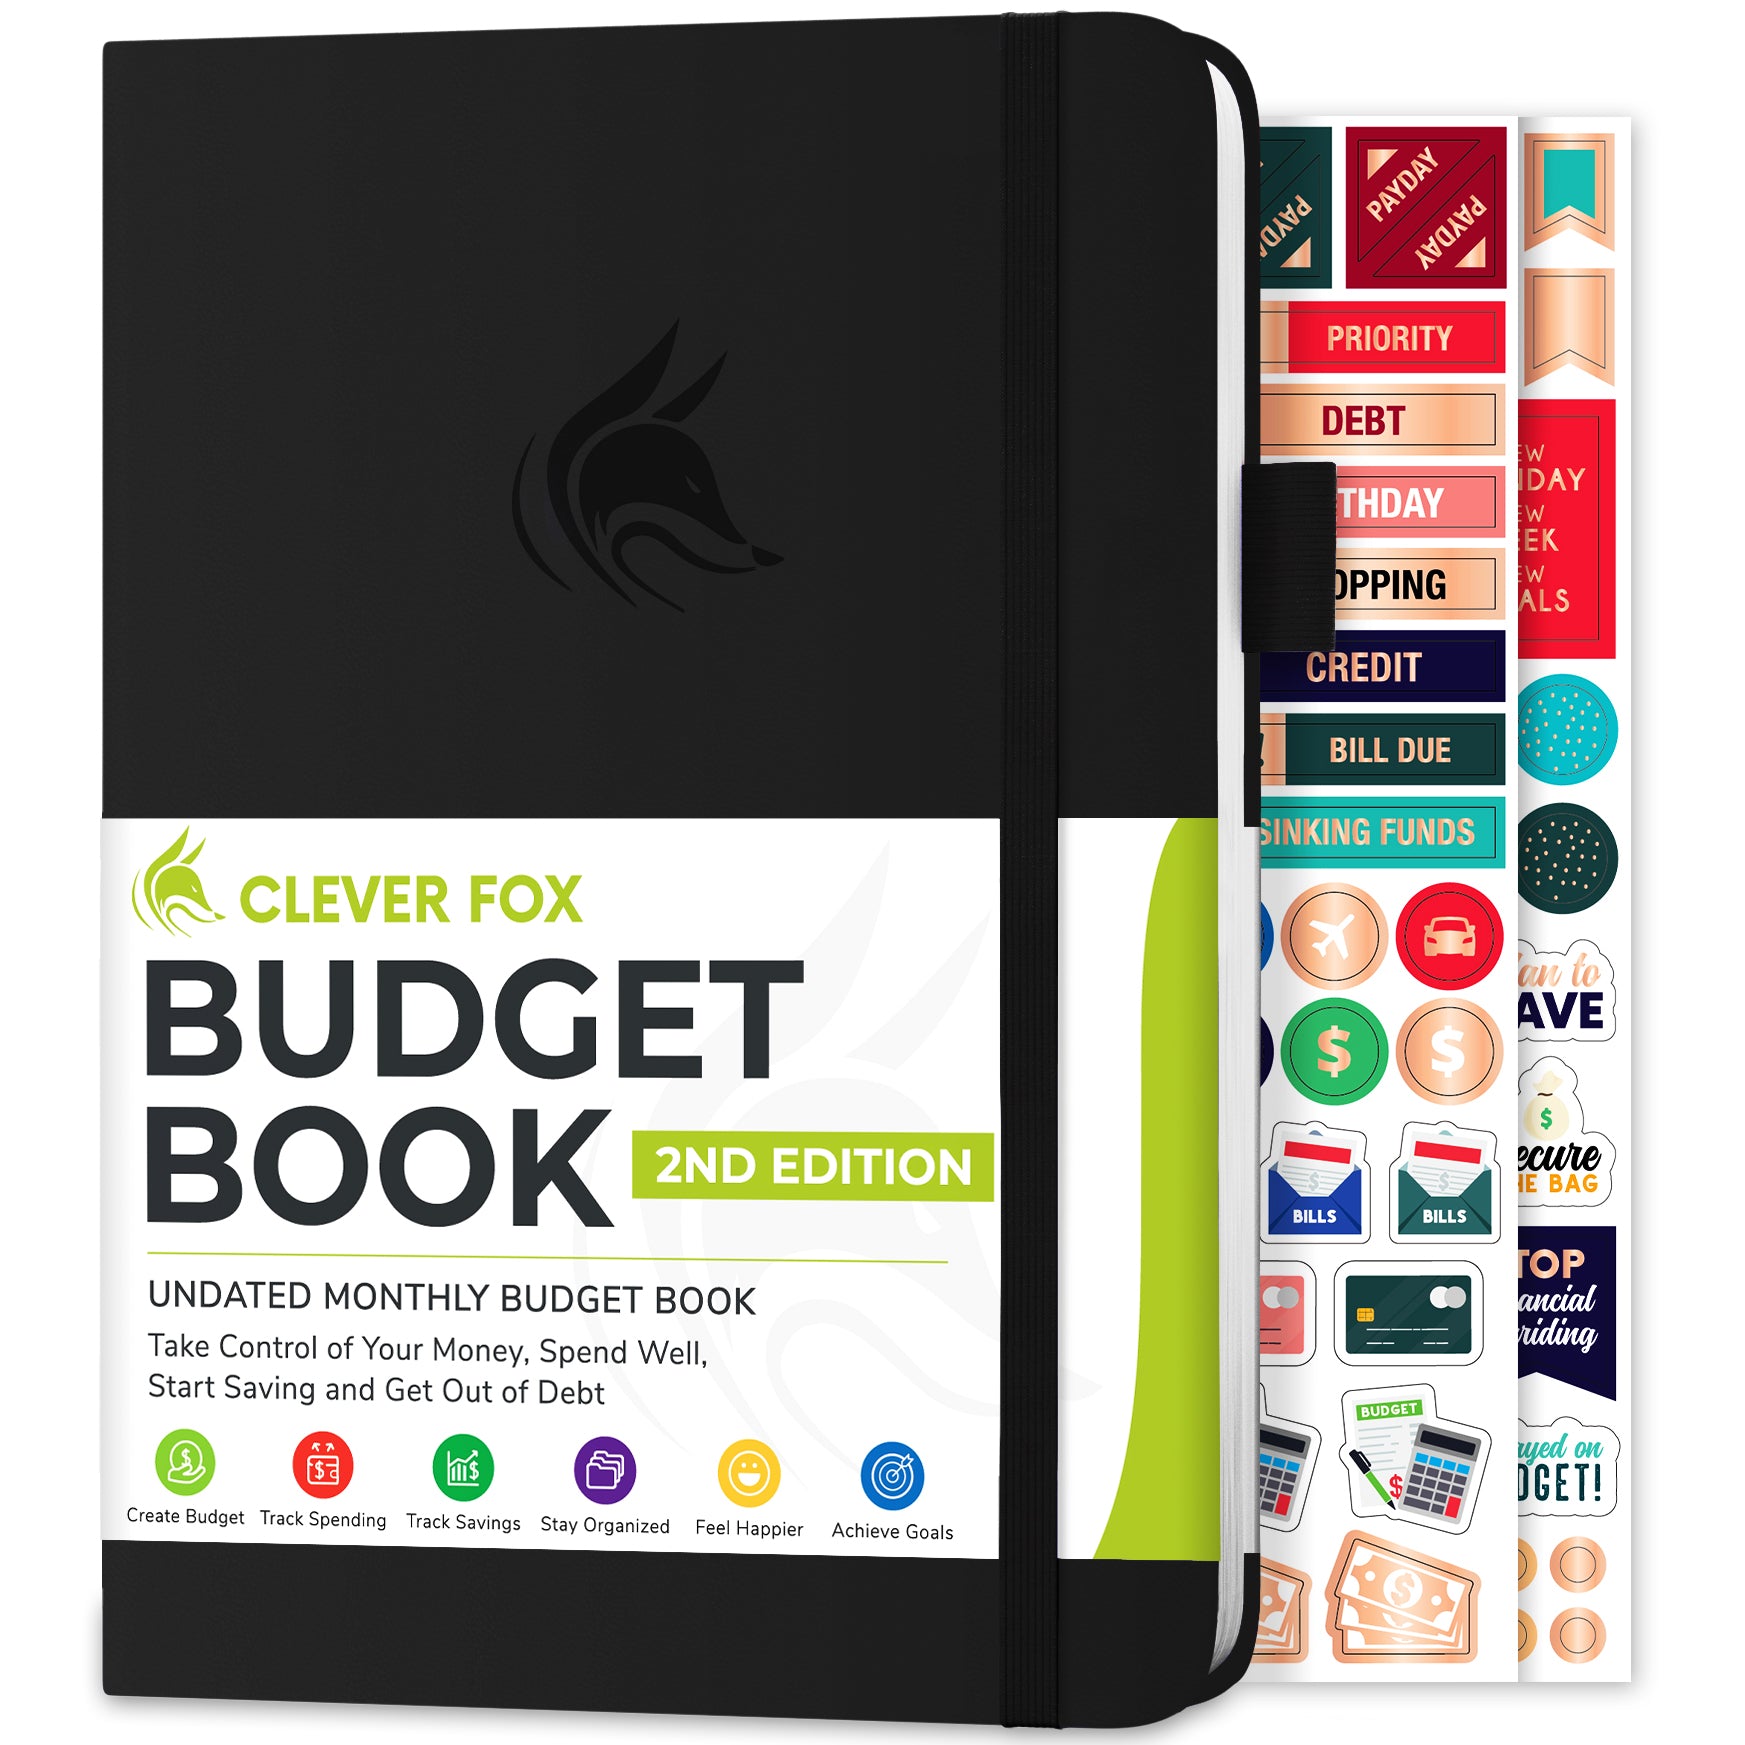 Budget Planner & Monthly Bill Organizer